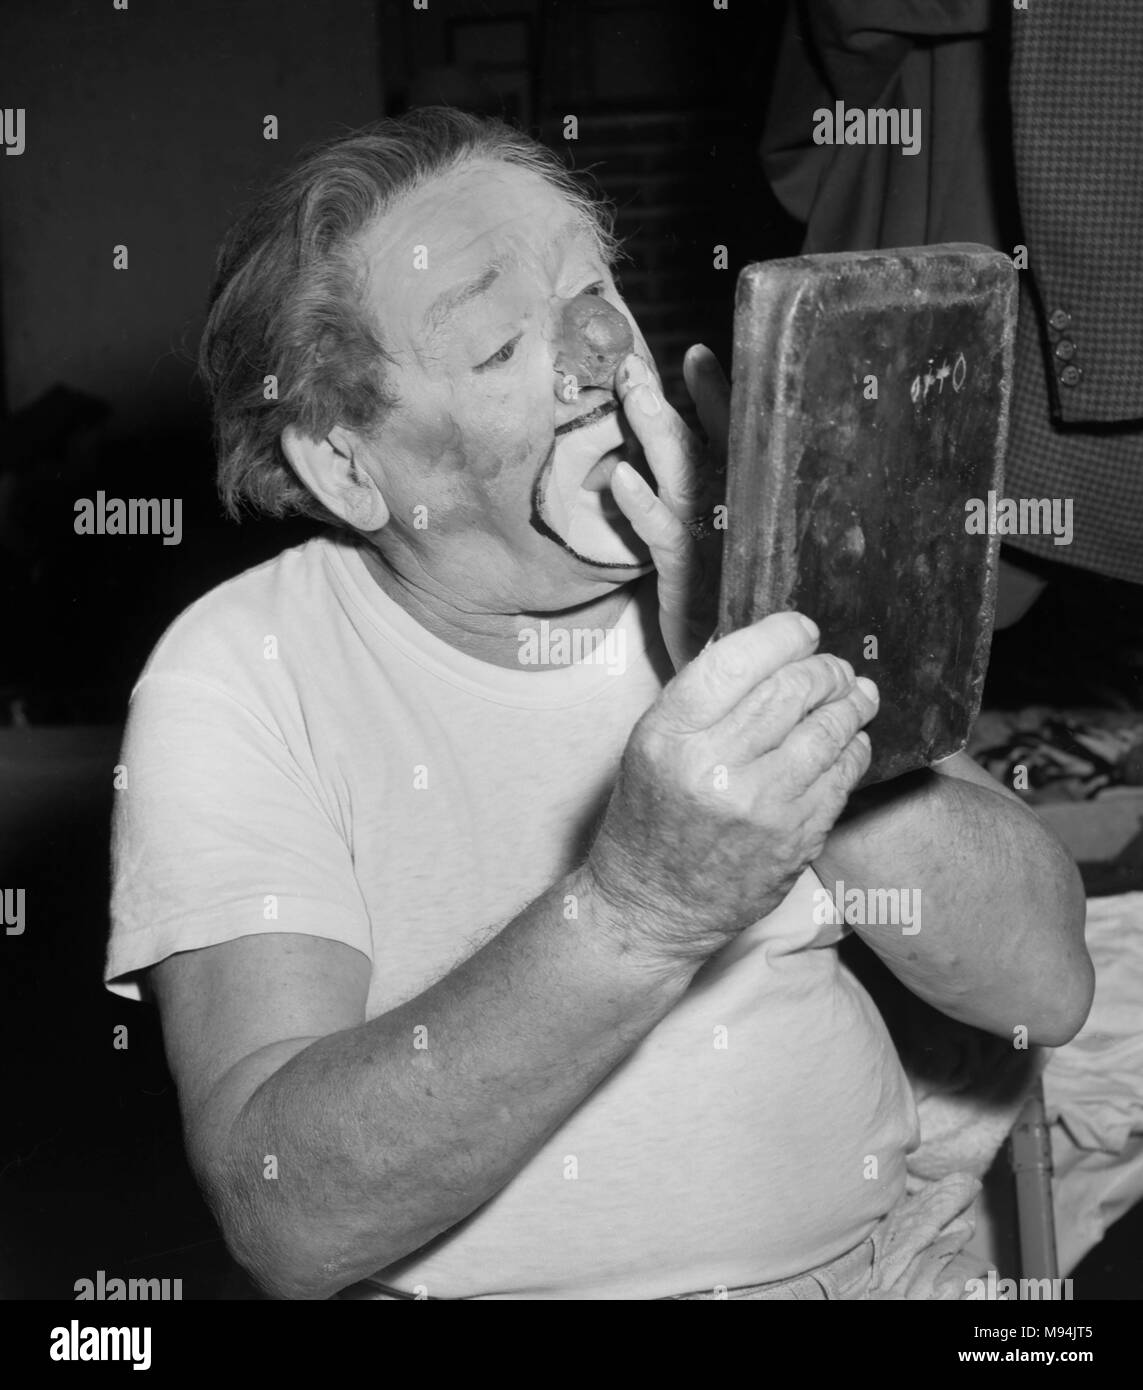 Otto Griebling applique prépare son nez et make-up avant un spectacle avec le Cirque Ringling Bros. and Barnum & Bailey en Géorgie en 1962. Il Emmet et Kelly ont été parmi les plus aimés des clowns aux États-Unis au 20e siècle. Il était surtout connu pour un gag avec une diminution de bloc de glace. Banque D'Images